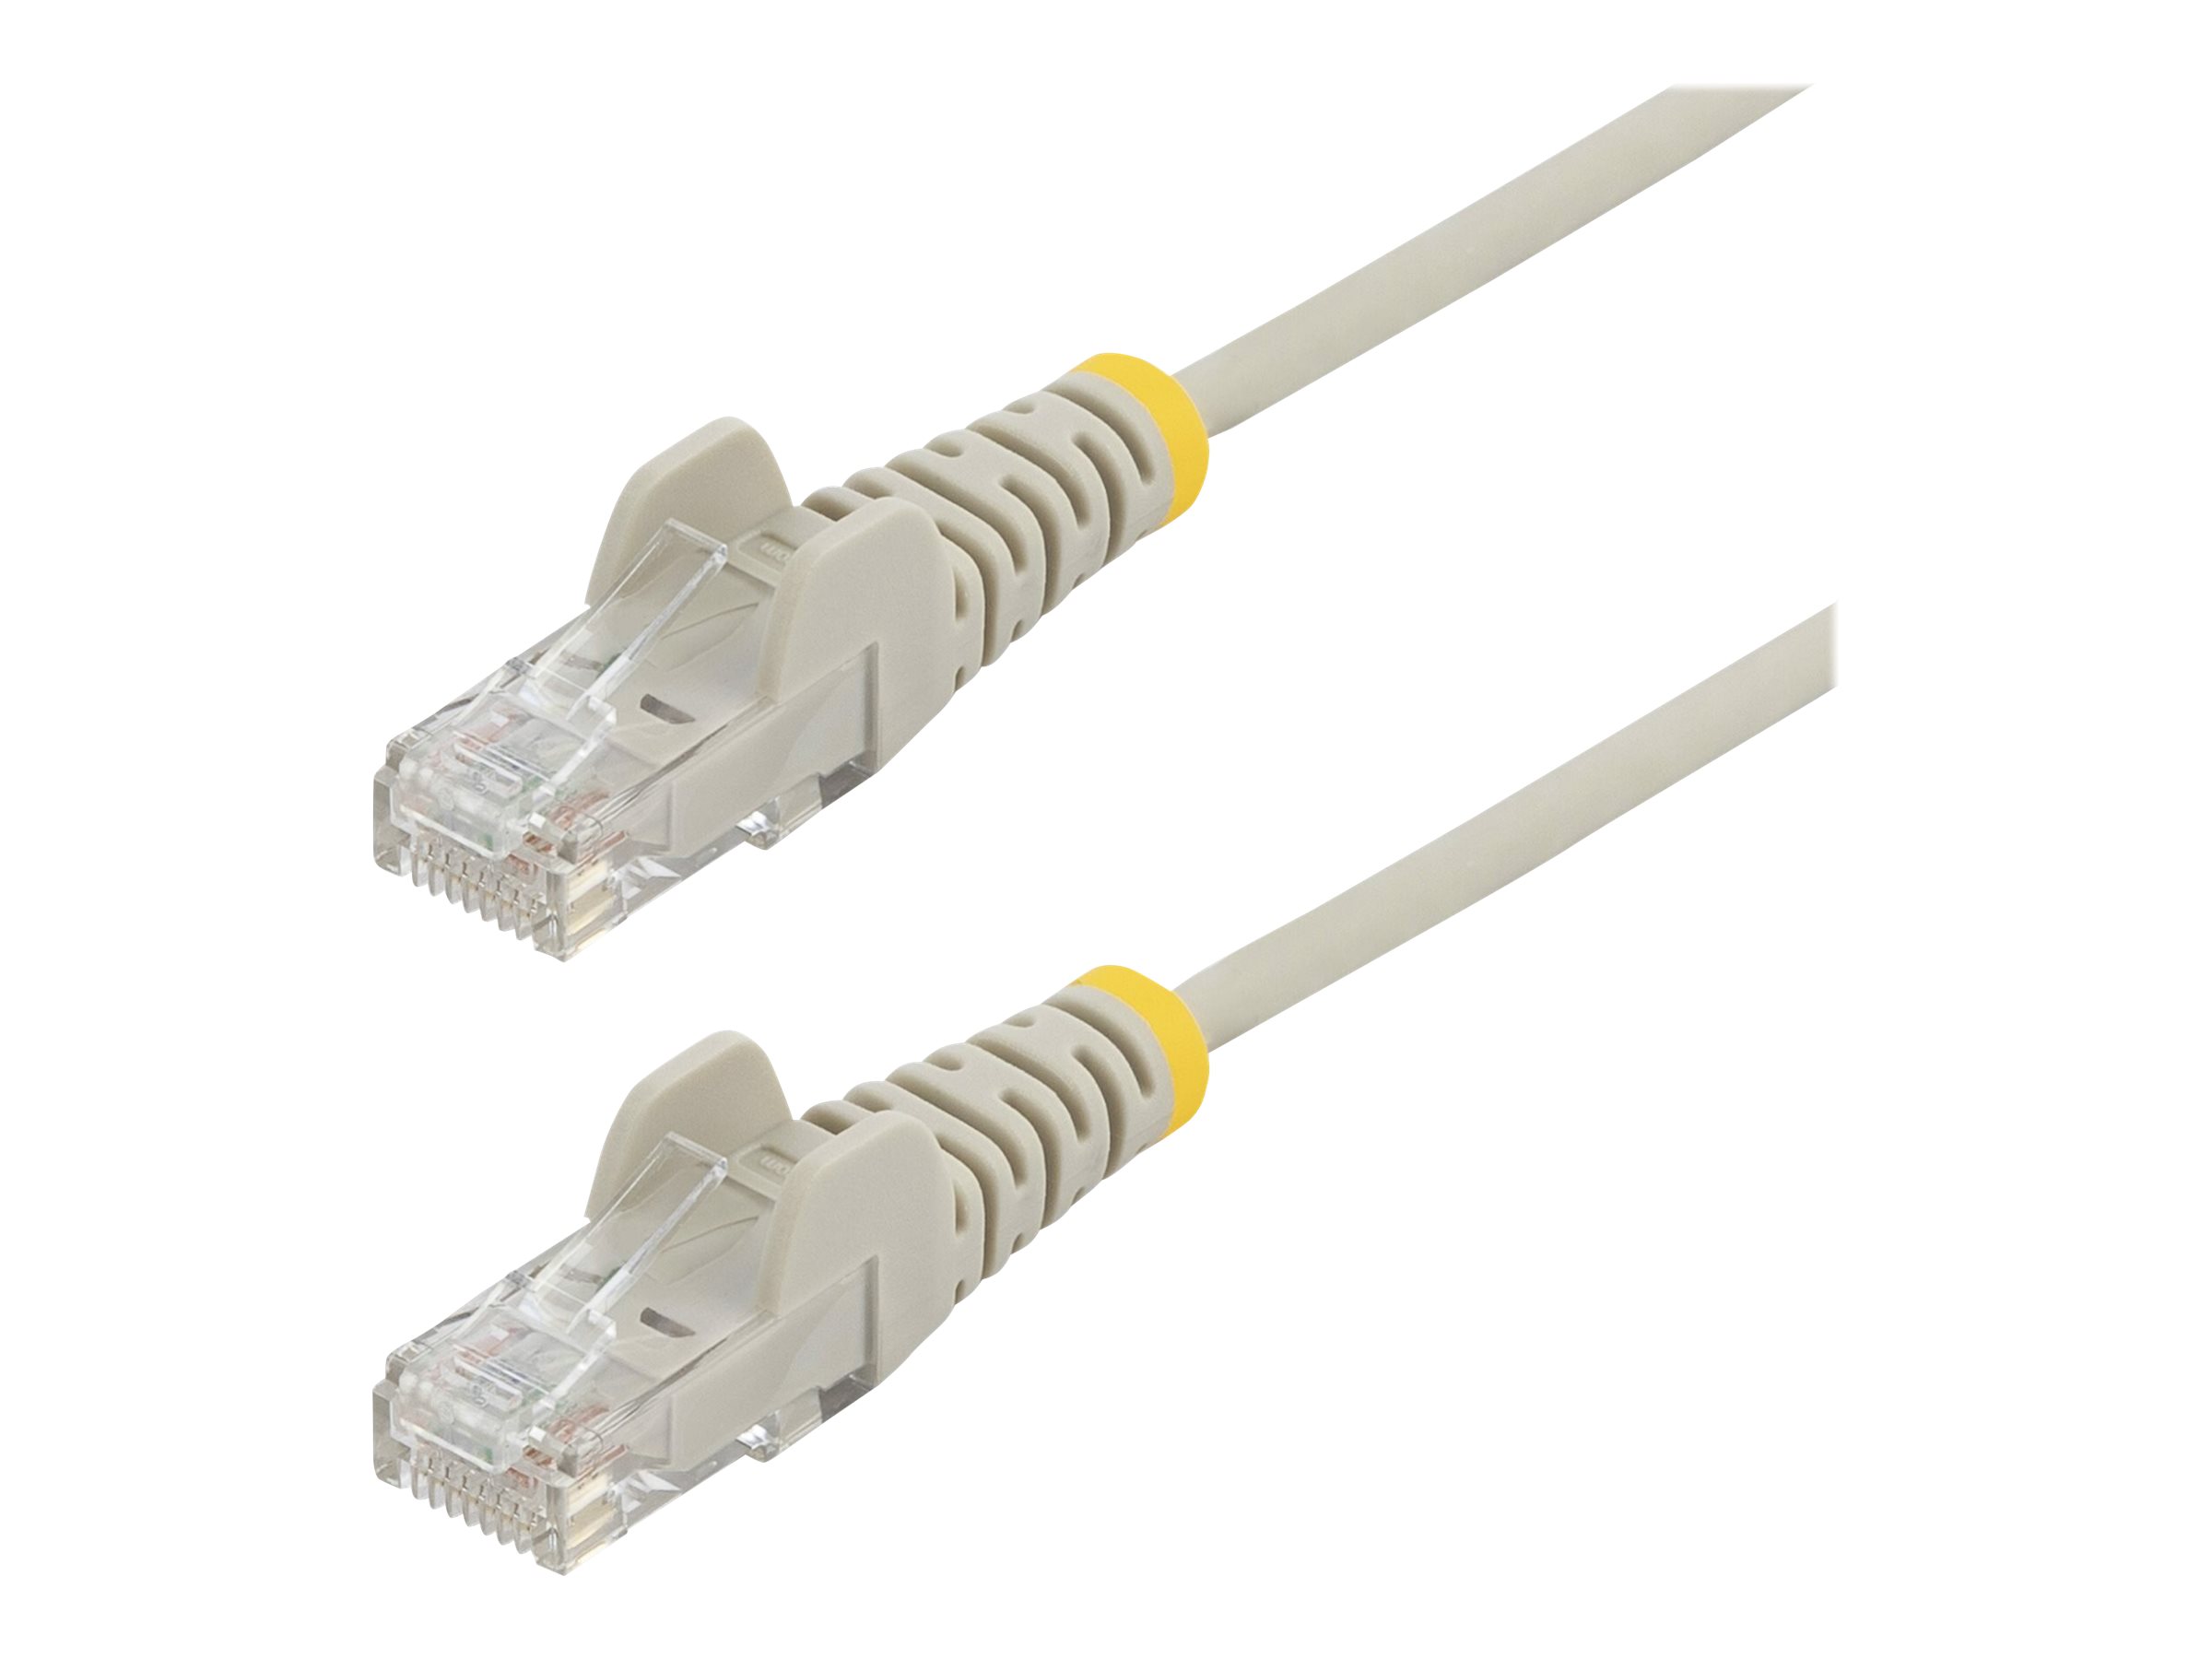 StarTech.com Cable reseau Ethernet RJ45 Cat6 de 1,5 m - Cordon de brassage mince Cat 6 UTP sans crochet - Fil Gigabit gris (N6PAT150CMGRS) - Cordon de raccordement - RJ-45 (M) pour RJ-45 (M) - 1.5 m - CAT 6 - sans crochet - gris - N6PAT150CMGRS - Câbles à paire torsadée